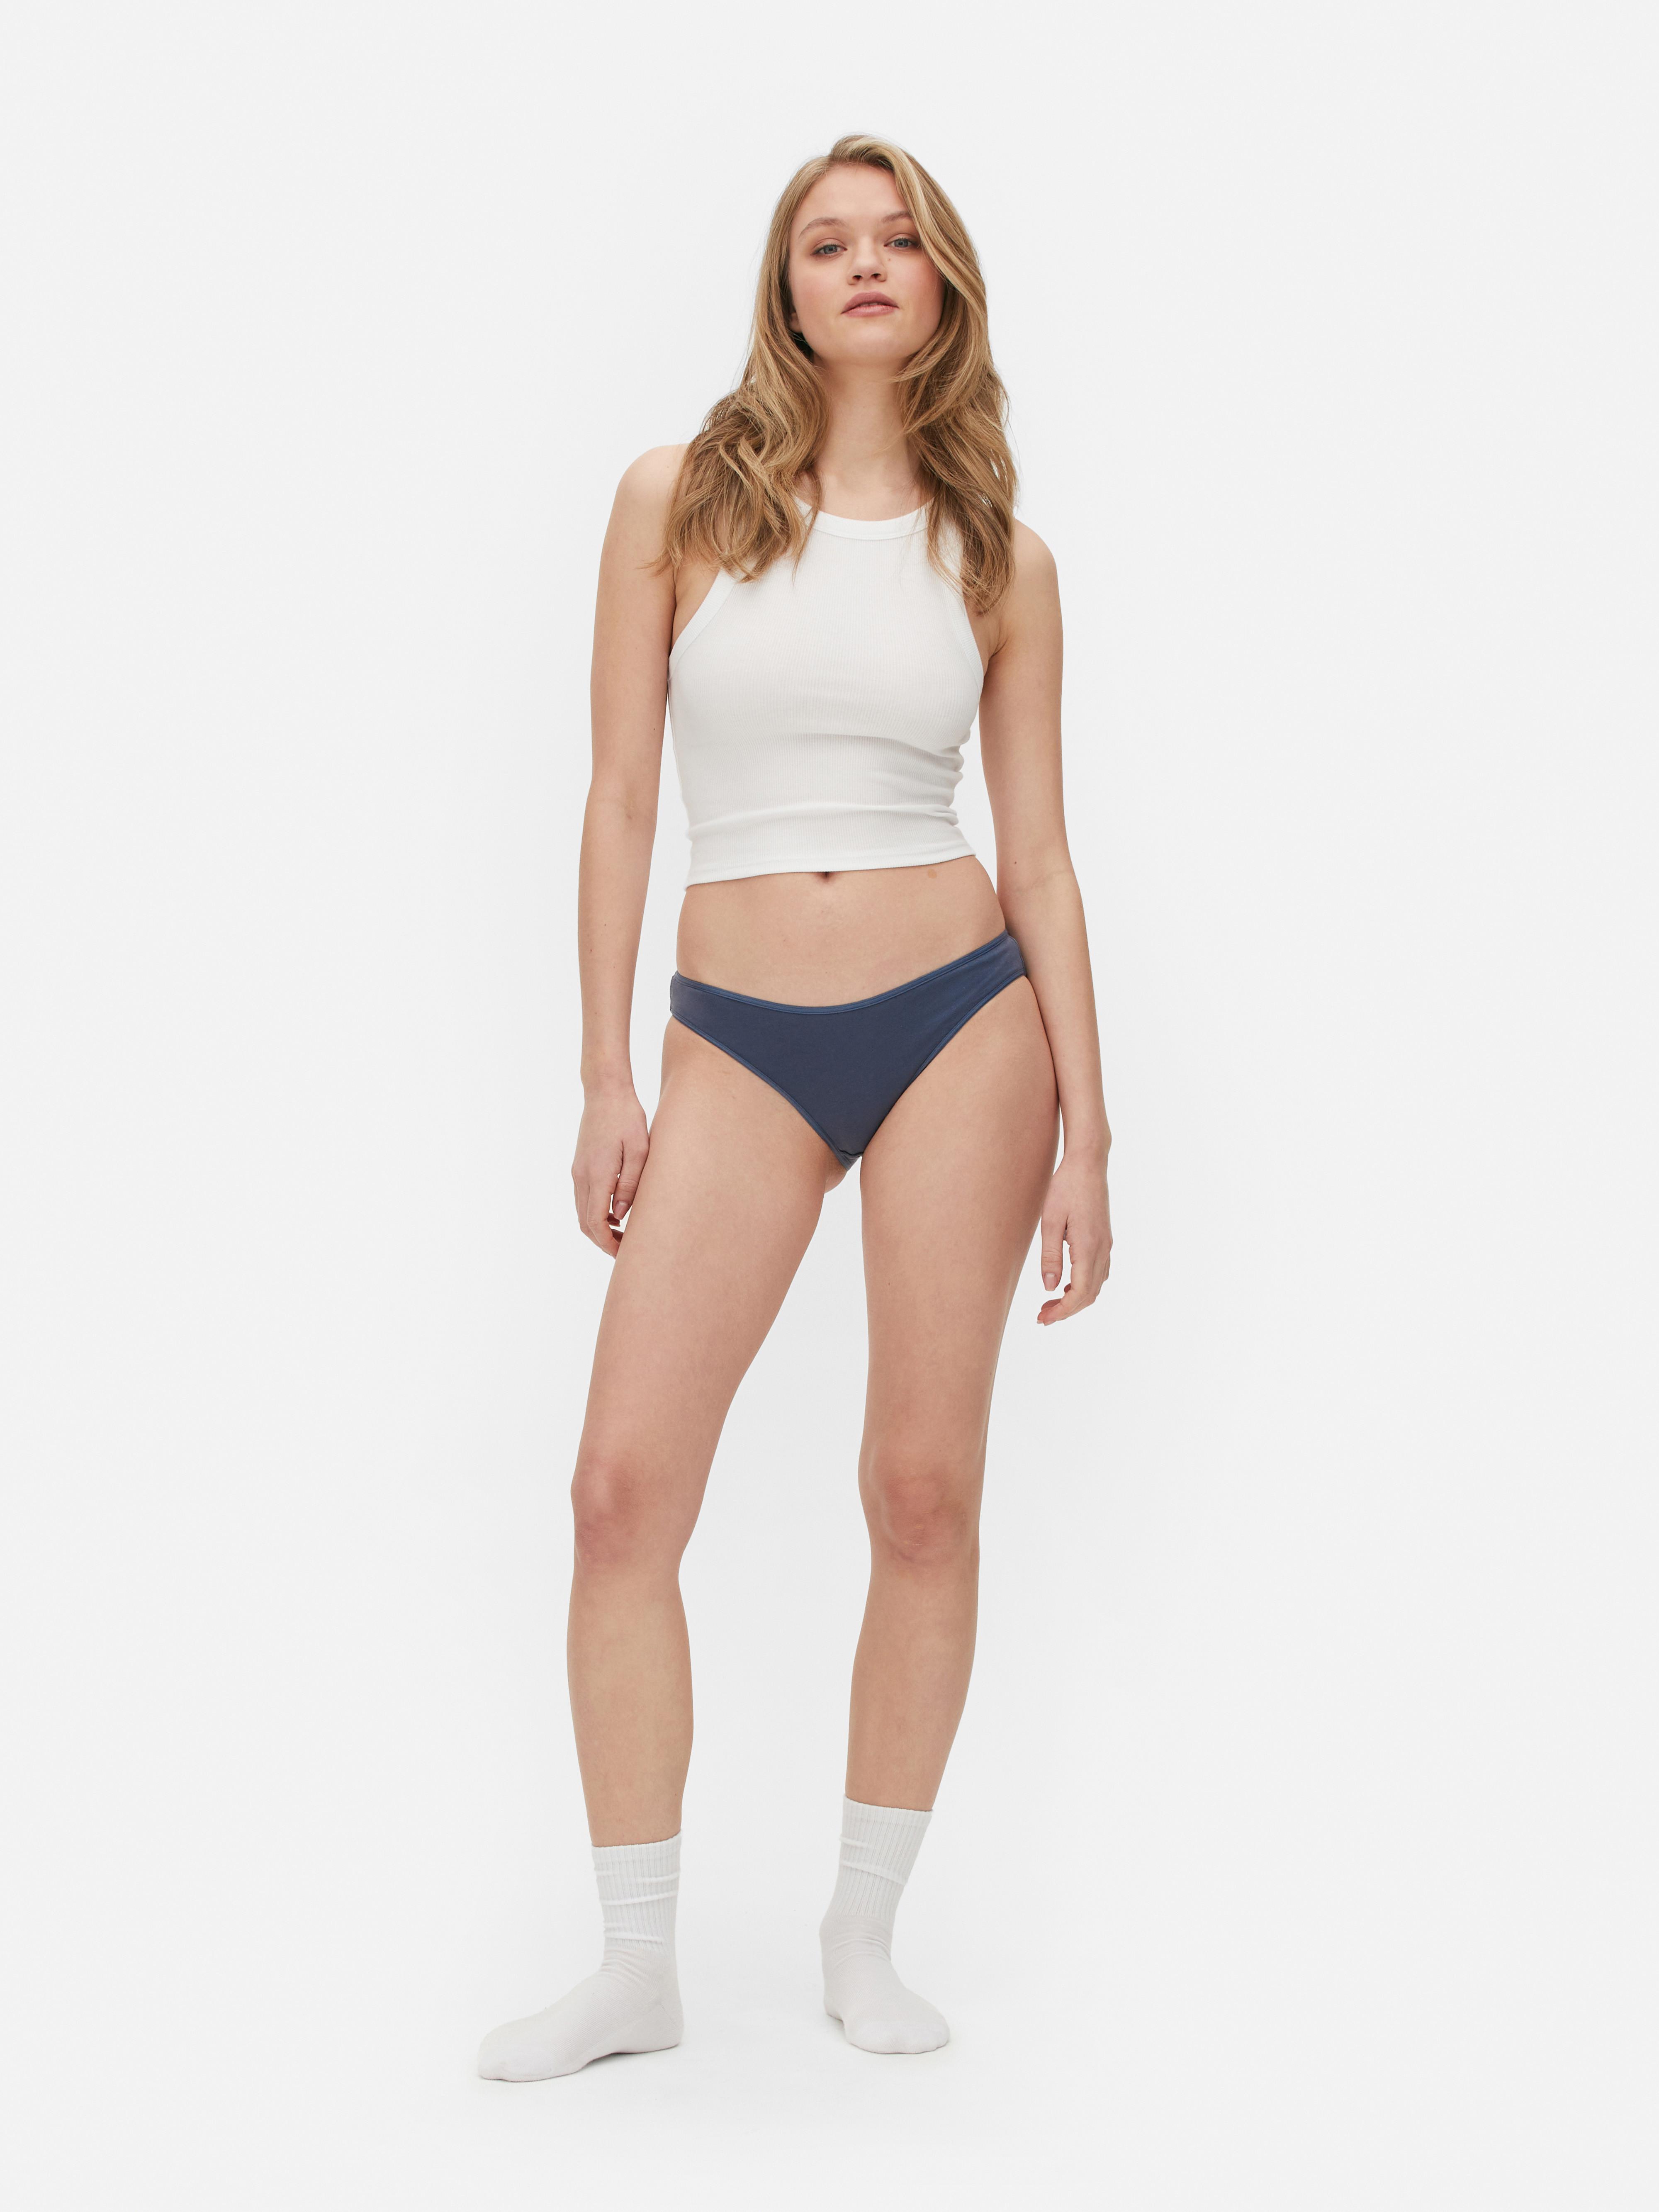 Primark Online Shop Women's Full Cup Thin Underwear Plus Size